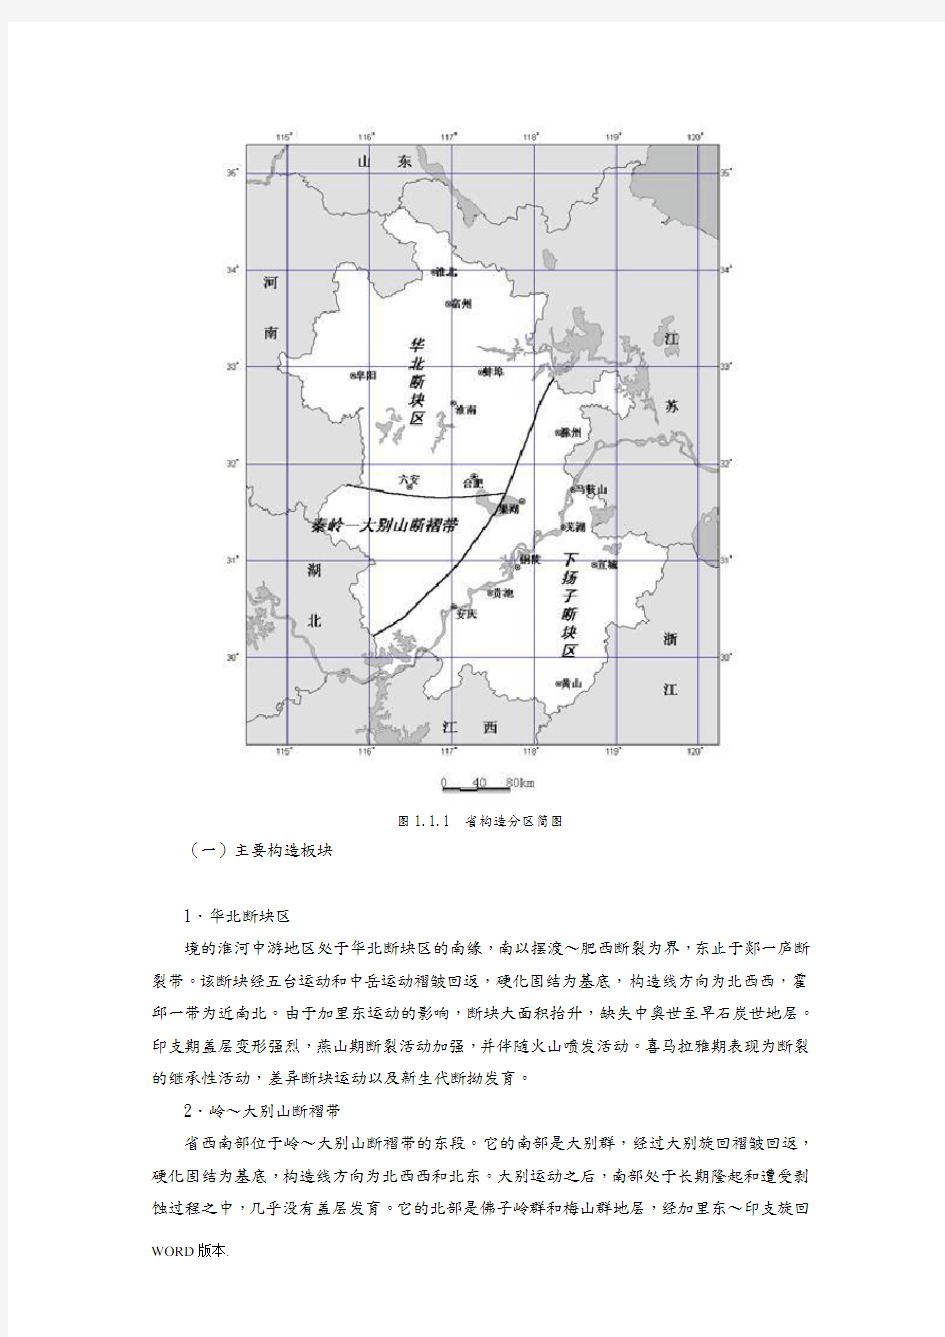 安徽地震监测概况